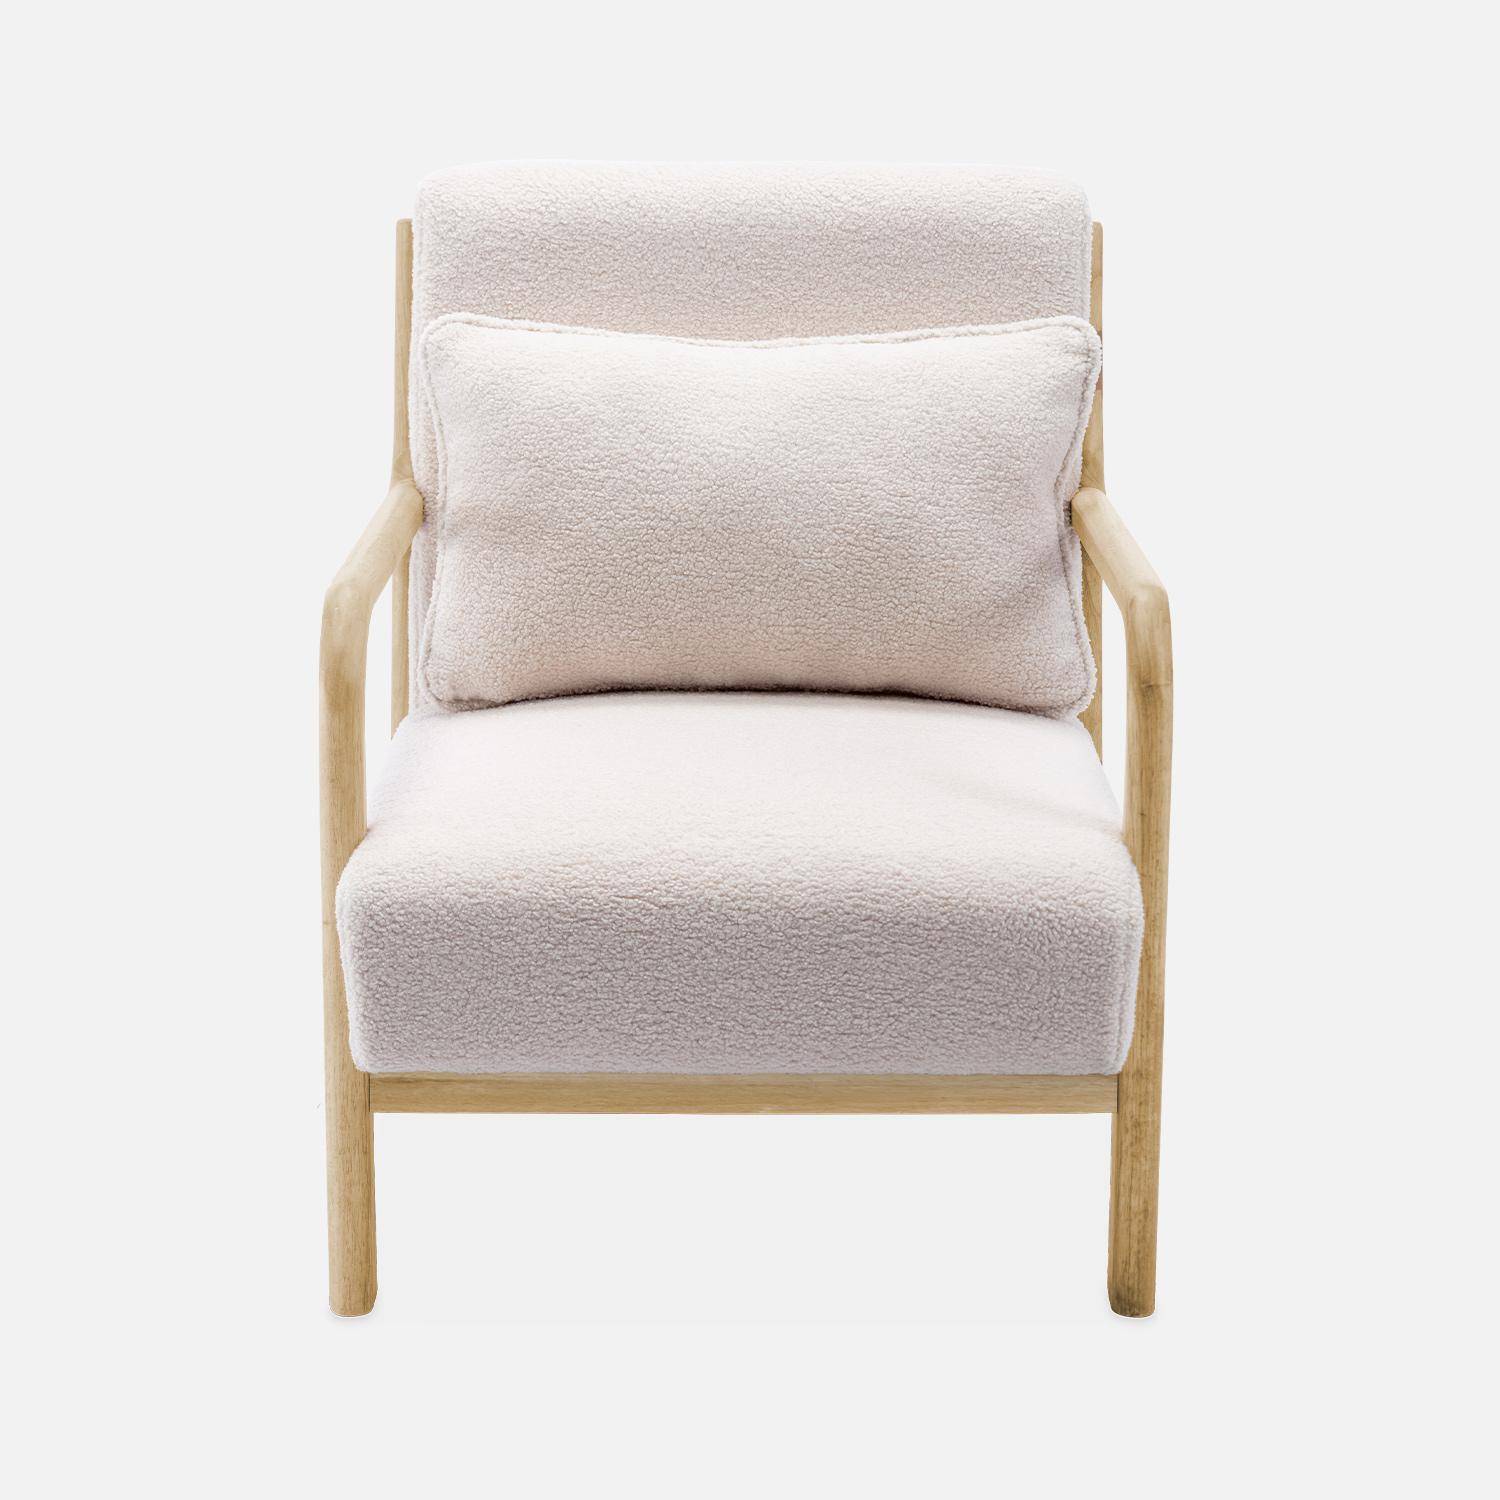 Weißer Sessel, Holz und Stoff, 1-Sitz, skandinavischer Stil, solides Holzgestell, bequeme Sitzfläche Photo5